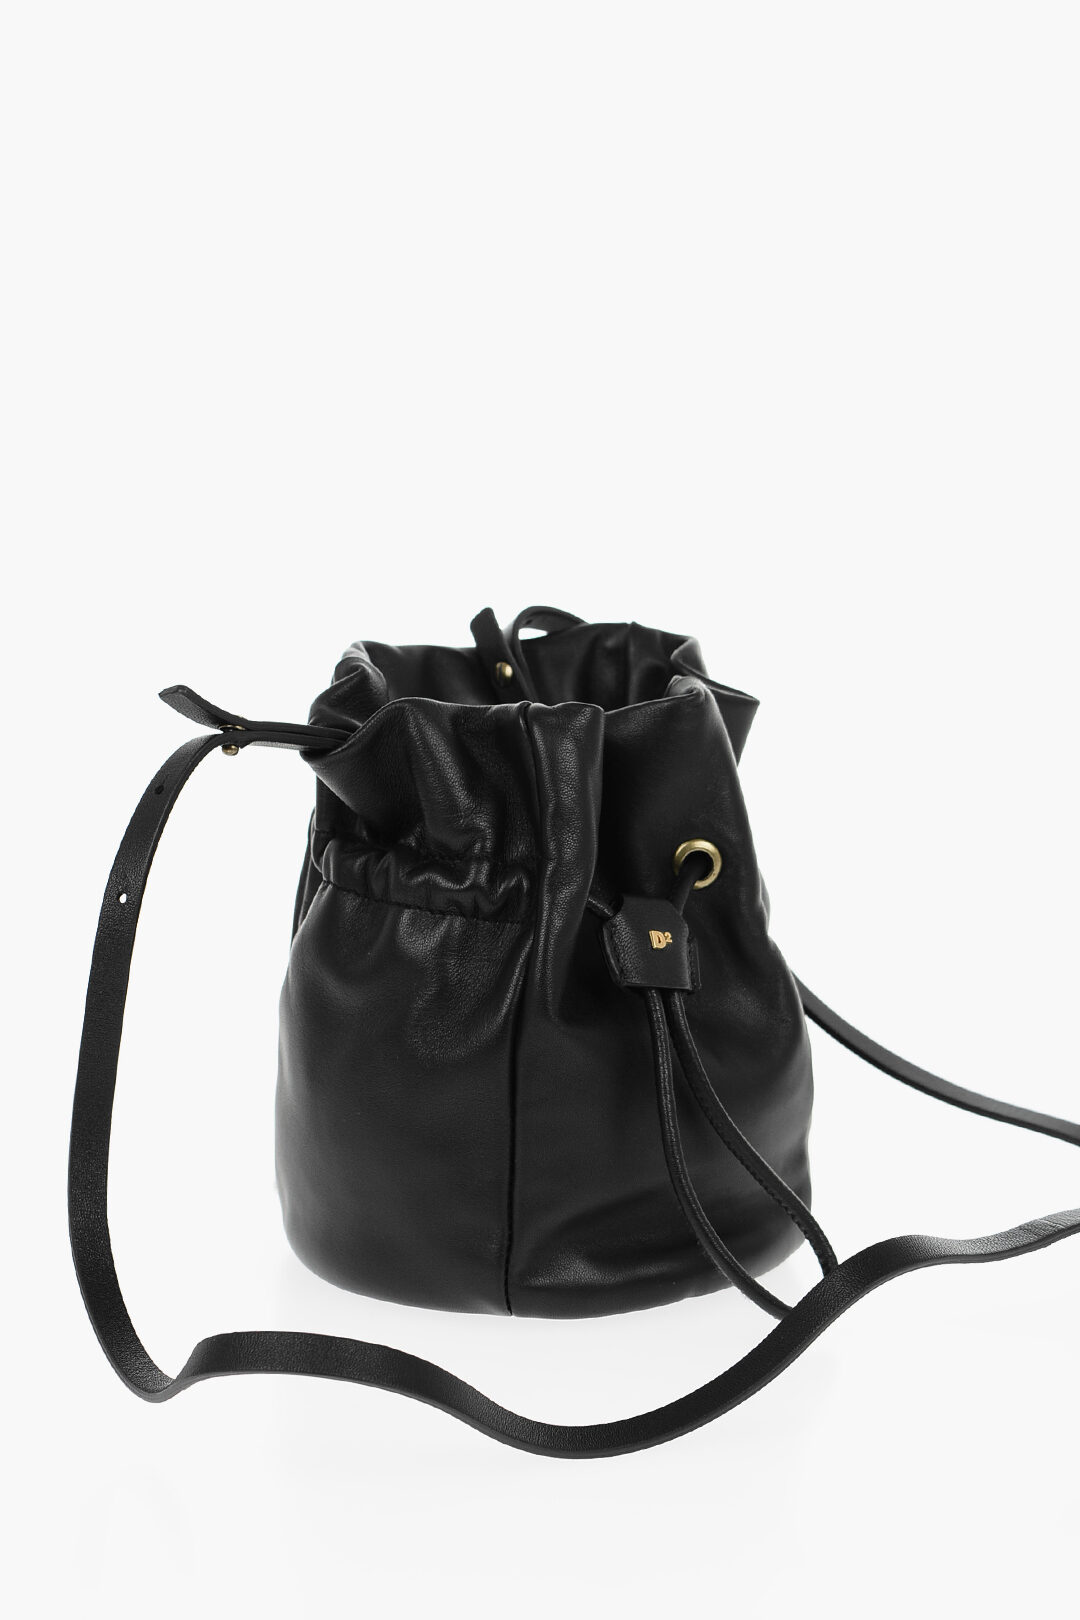 Dsquared2 Outlet: Shoulder bag woman - Black